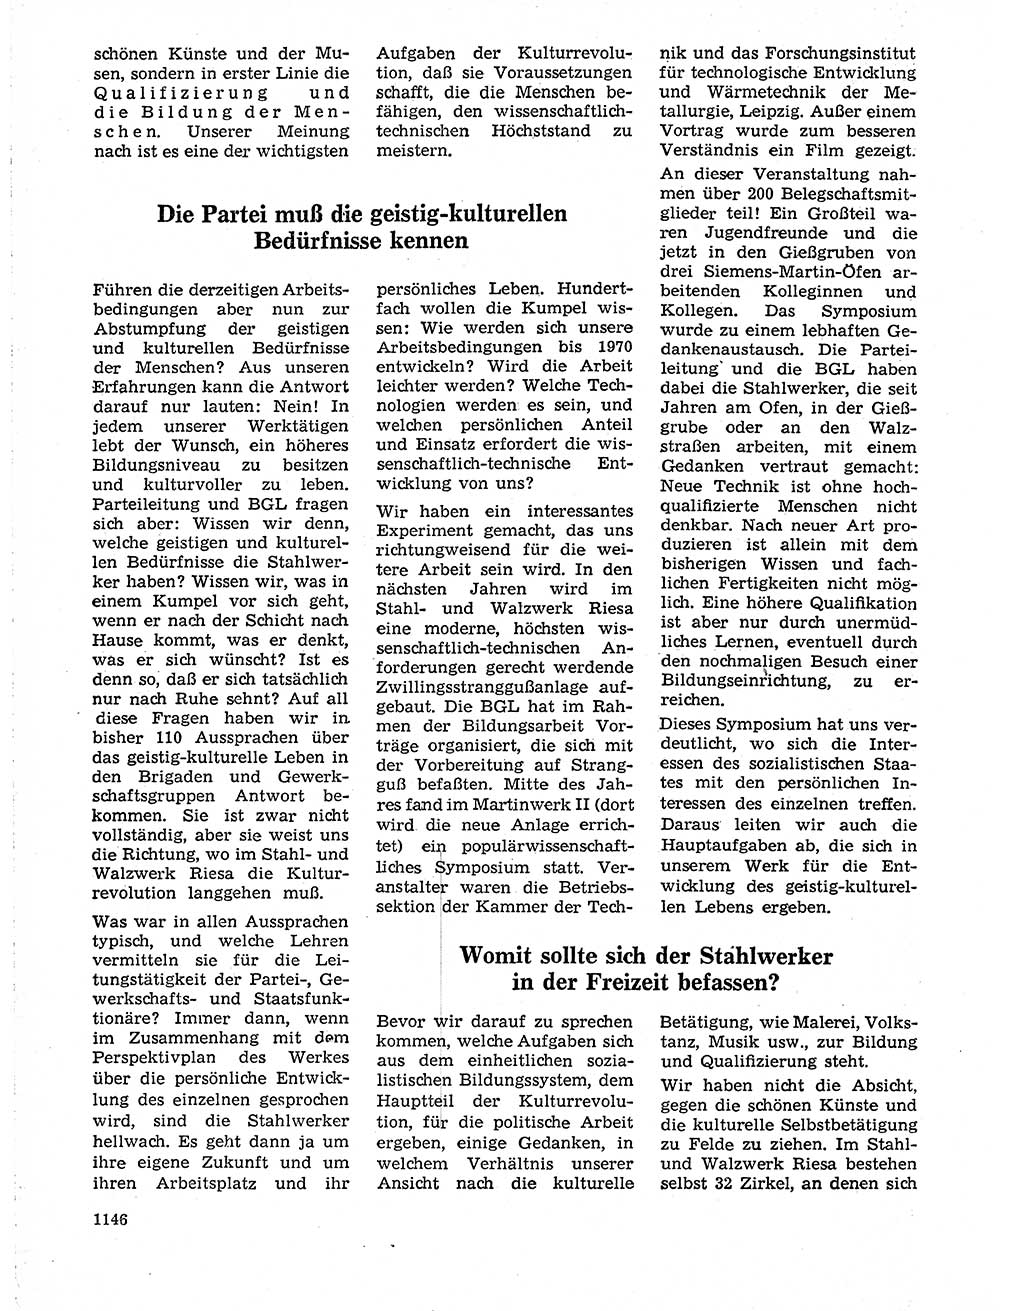 Neuer Weg (NW), Organ des Zentralkomitees (ZK) der SED (Sozialistische Einheitspartei Deutschlands) für Fragen des Parteilebens, 19. Jahrgang [Deutsche Demokratische Republik (DDR)] 1964, Seite 1146 (NW ZK SED DDR 1964, S. 1146)